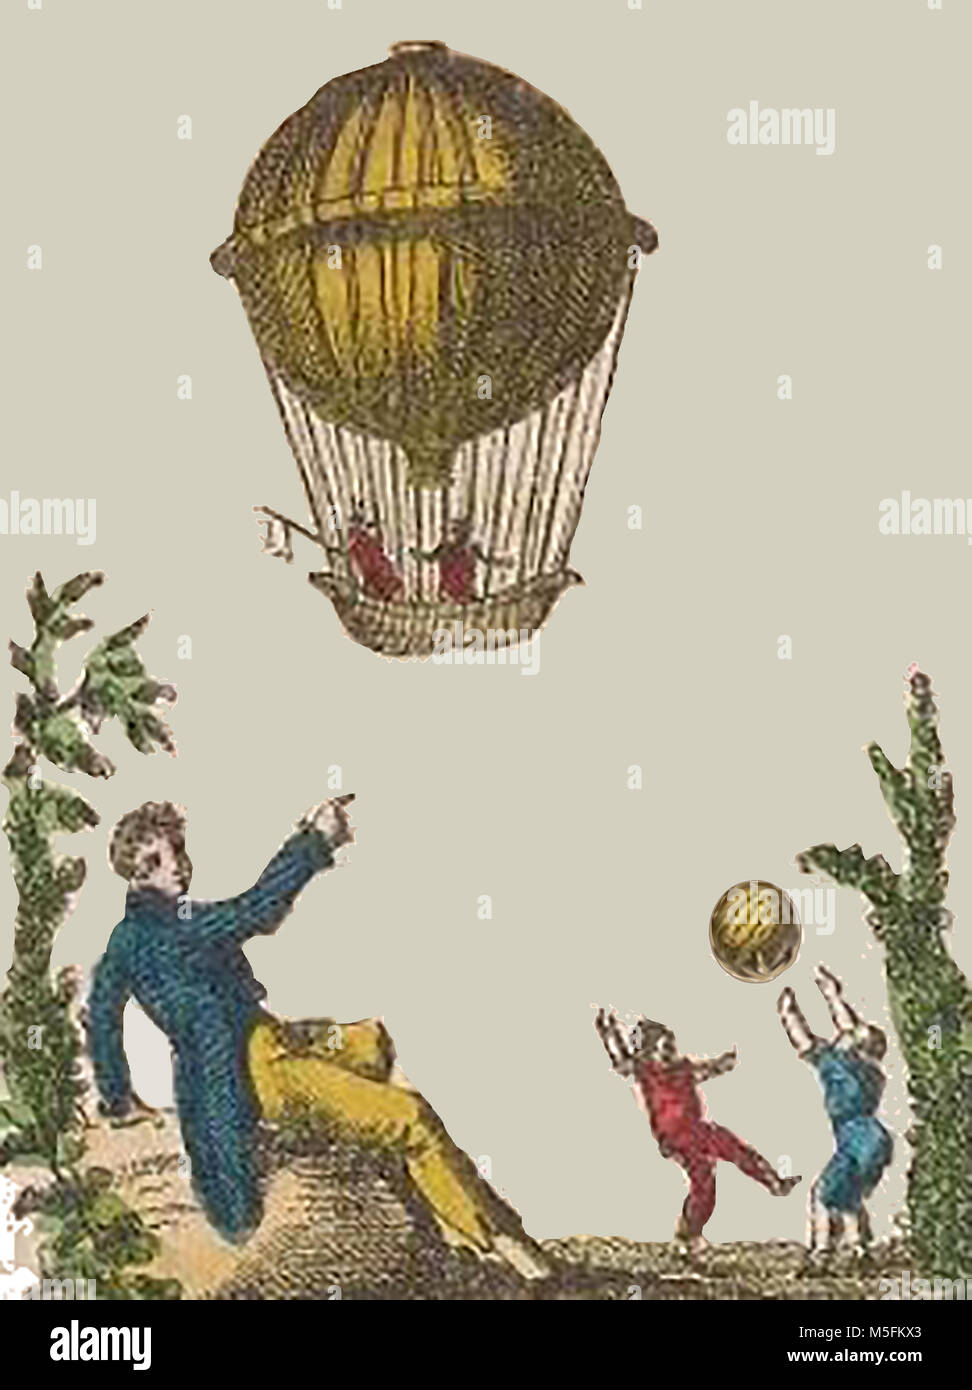 Aeronautica storico, palloncini e macchine volanti - un inizio di illustrazione dei bambini che giocano con una palla come un palloncino precoce galleggianti al di sopra di esse Foto Stock